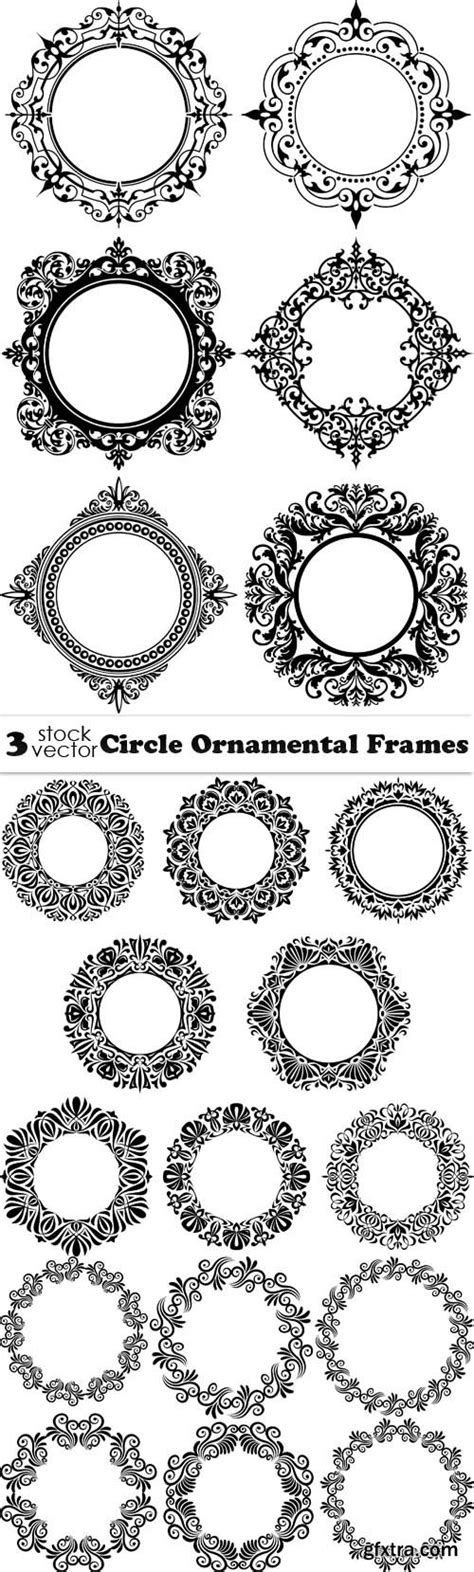 Vectors Circle Ornamental Frames Gfxtra